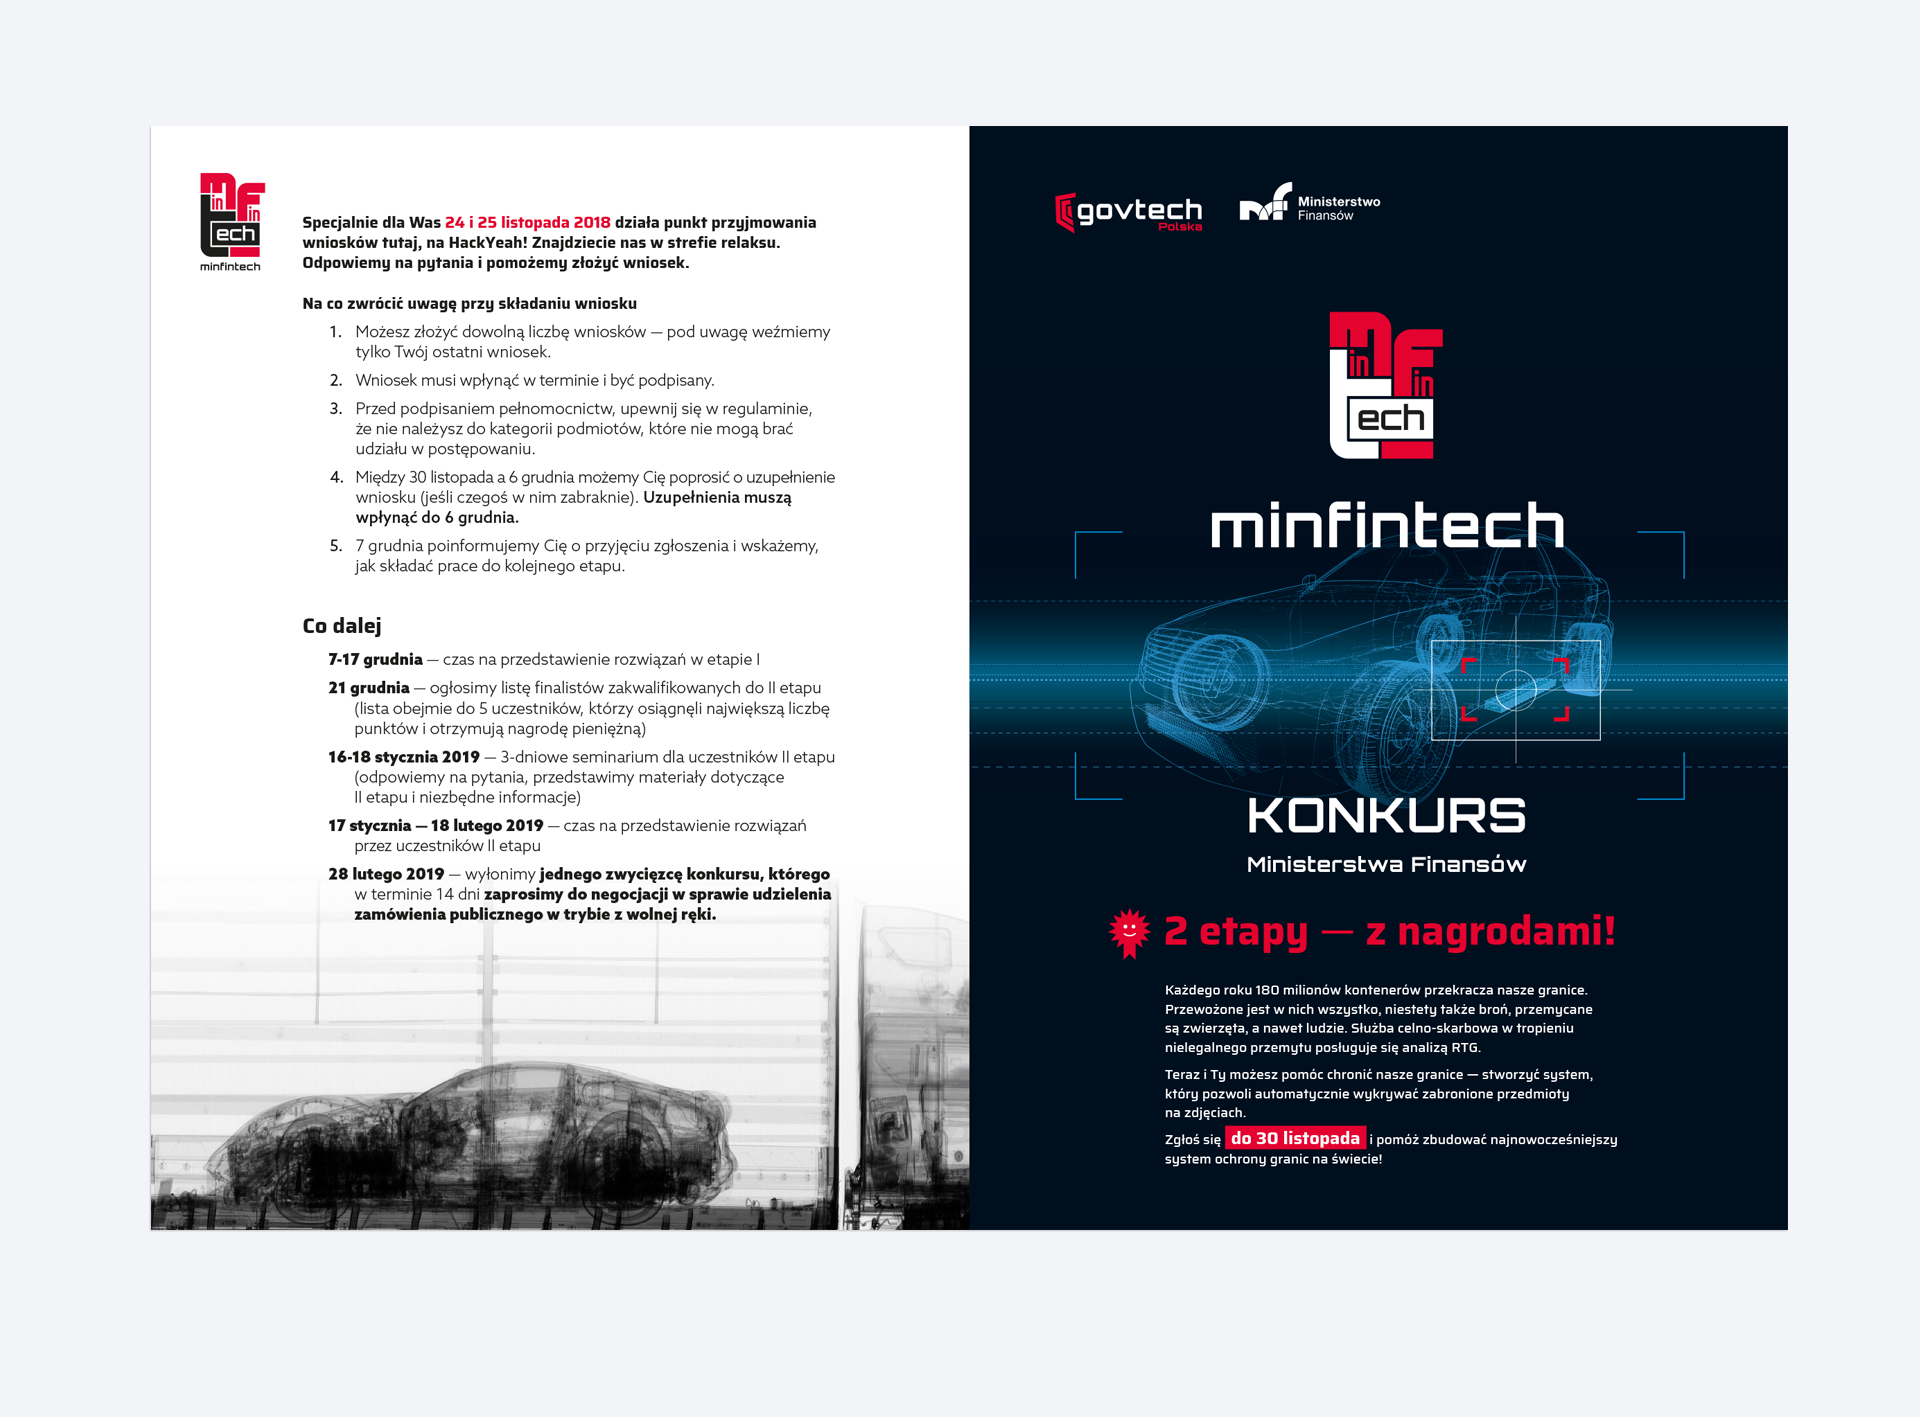 leaflet for #MinFinTech contest